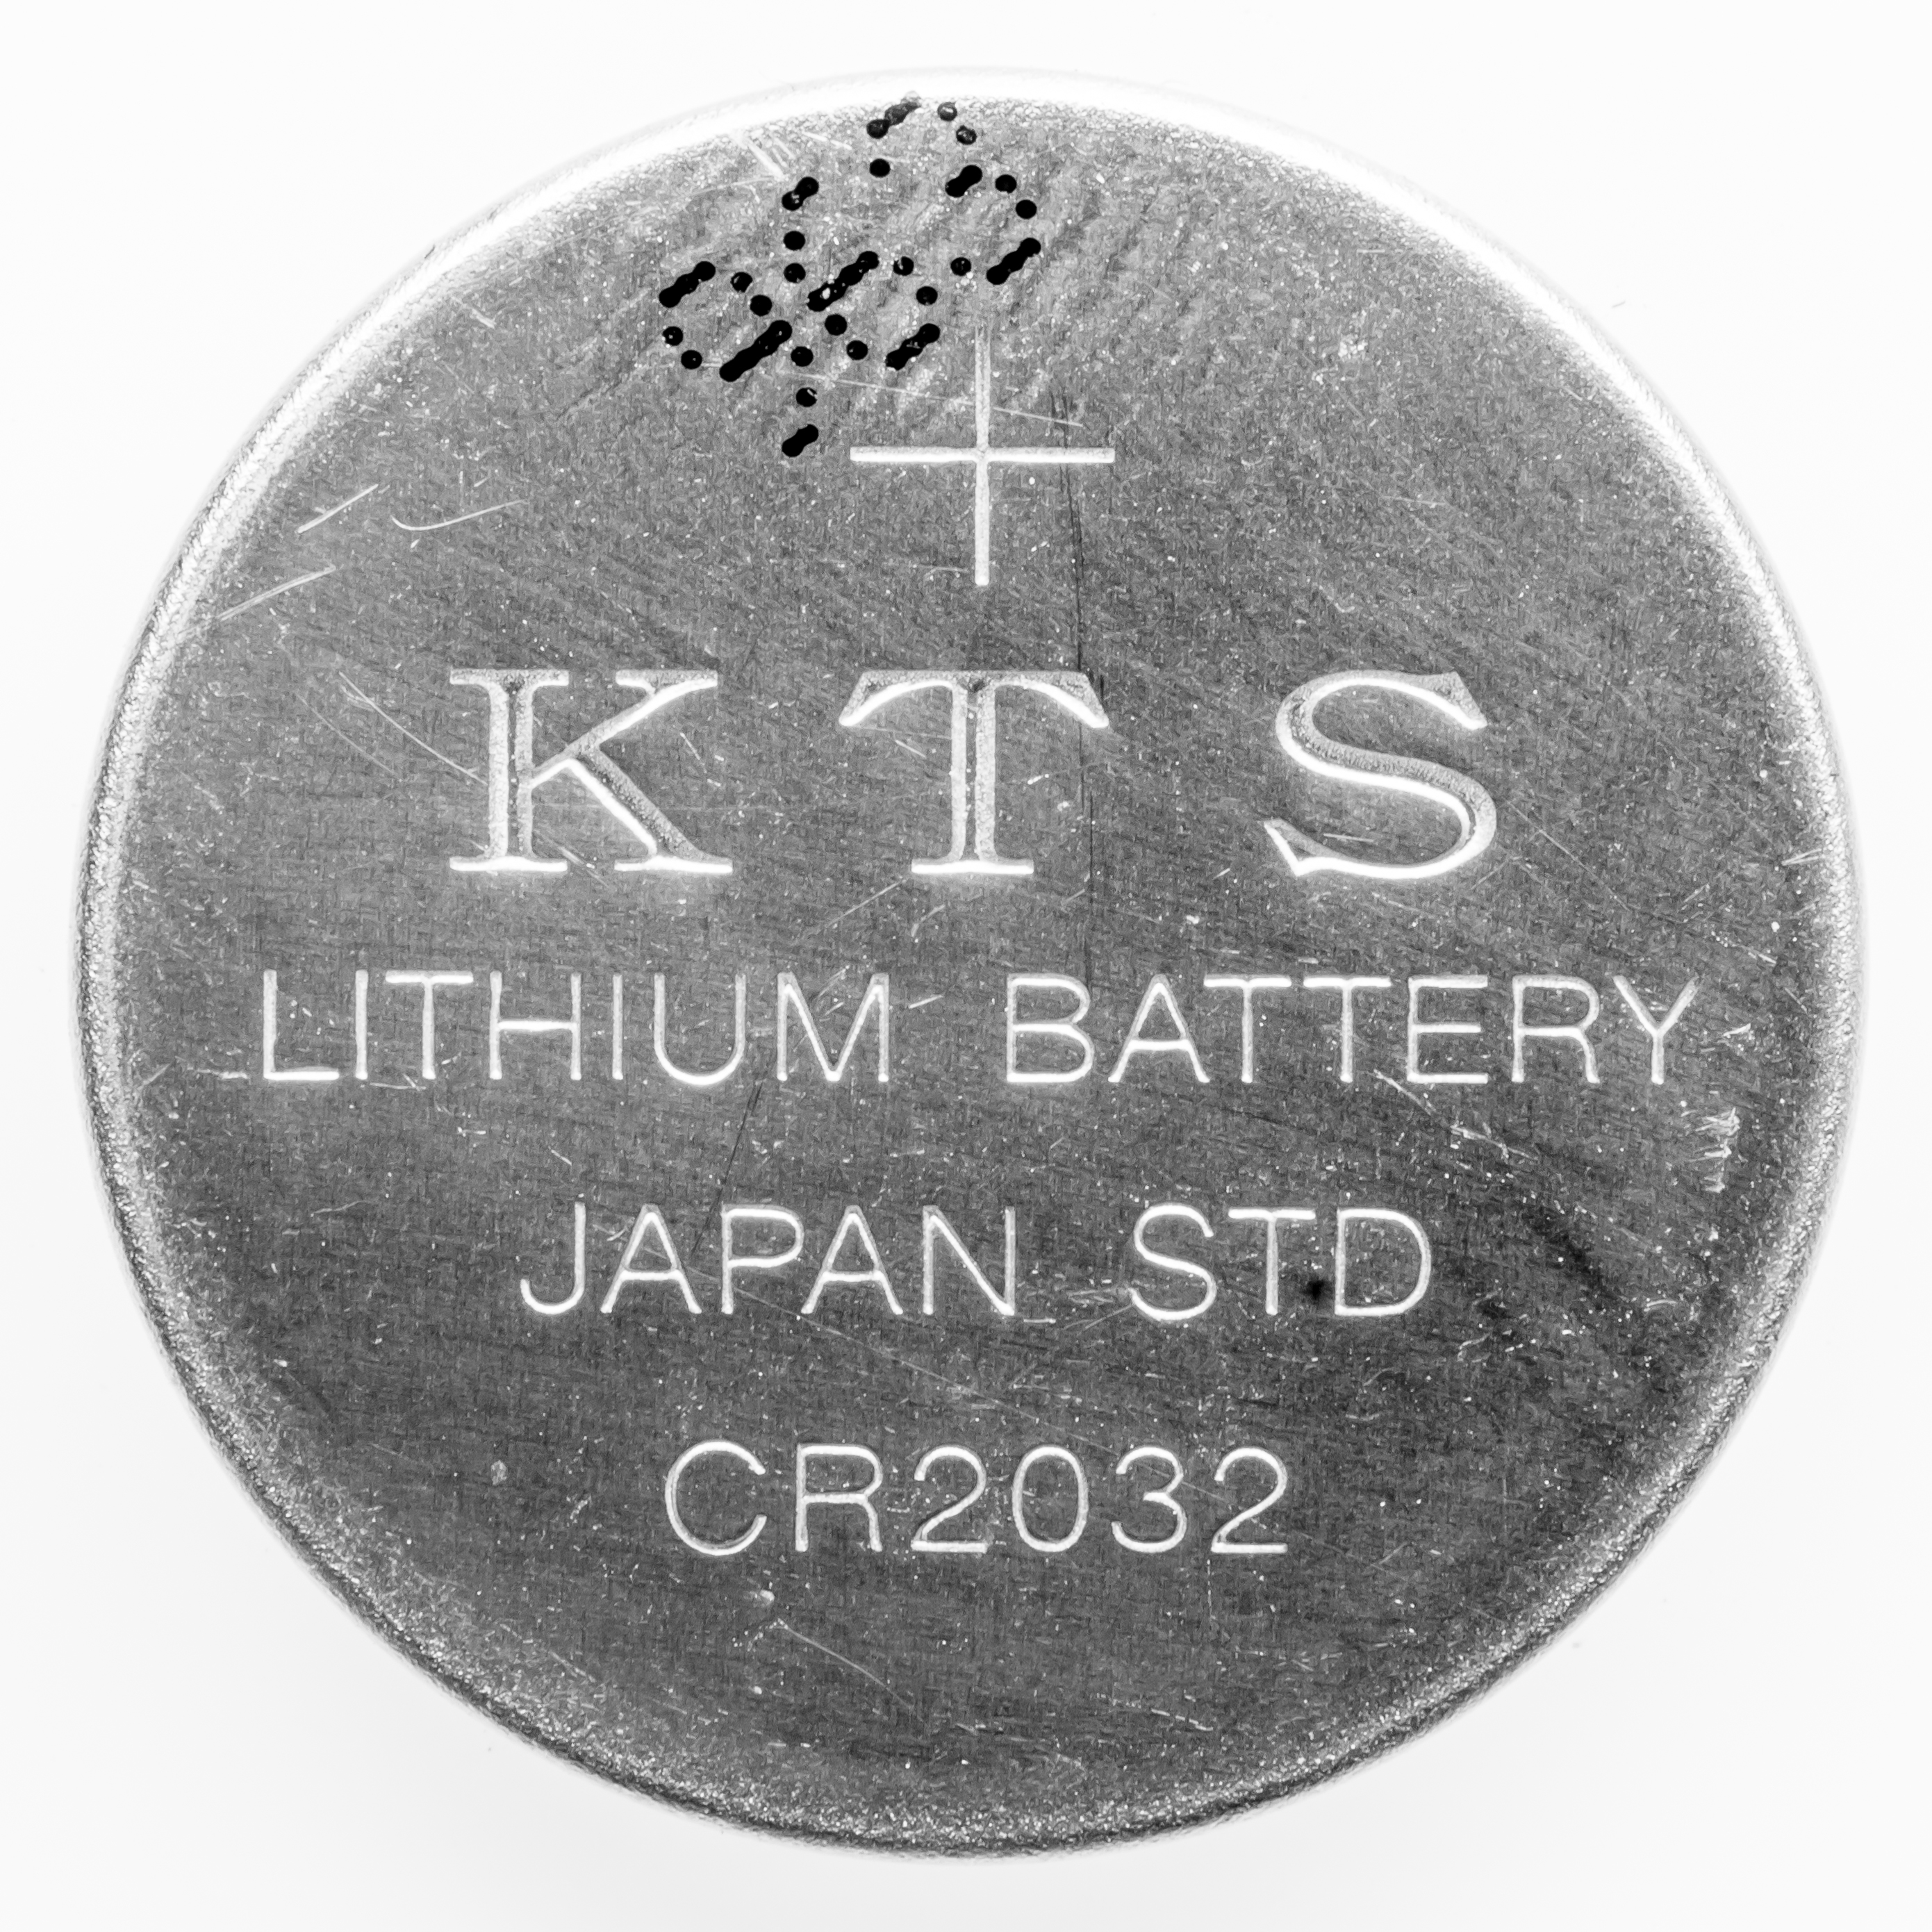 sr 2032 battery